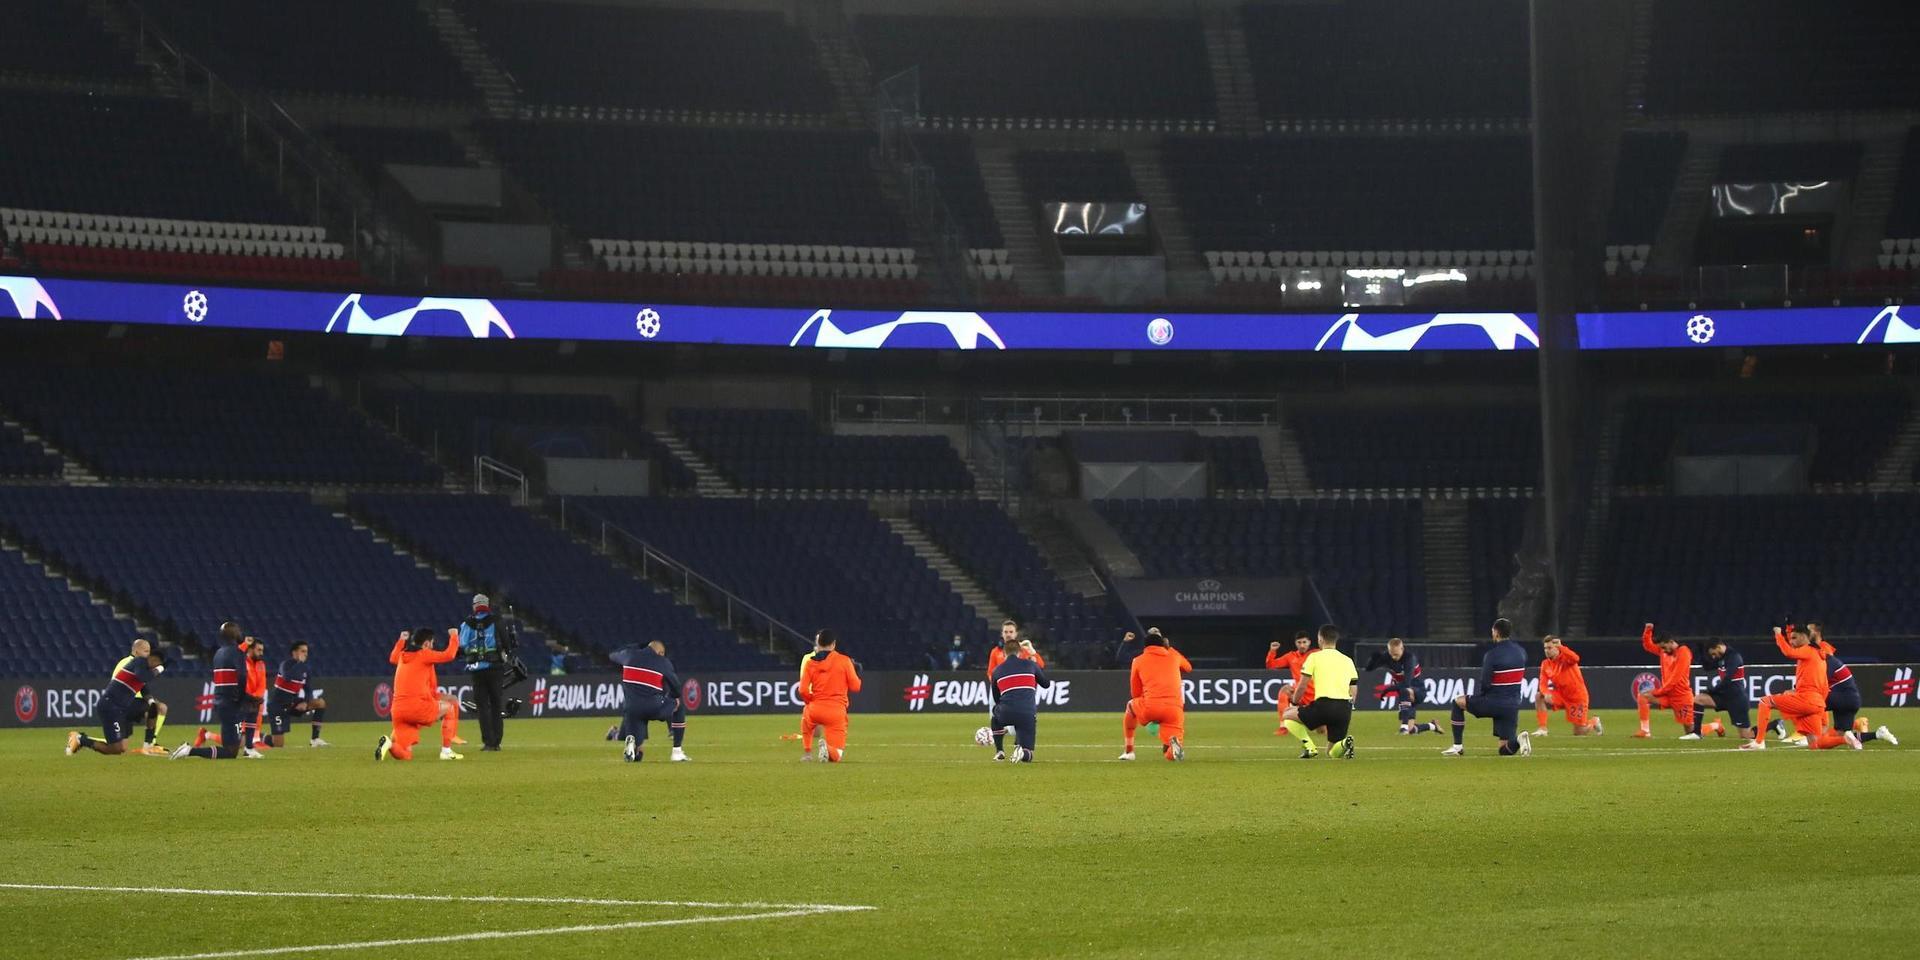 PSG:s och Basaksehirs spelare förenades runt mittcirkeln i en manifestation mot rasism inför onsdagens Champions League-match mellan lagen.